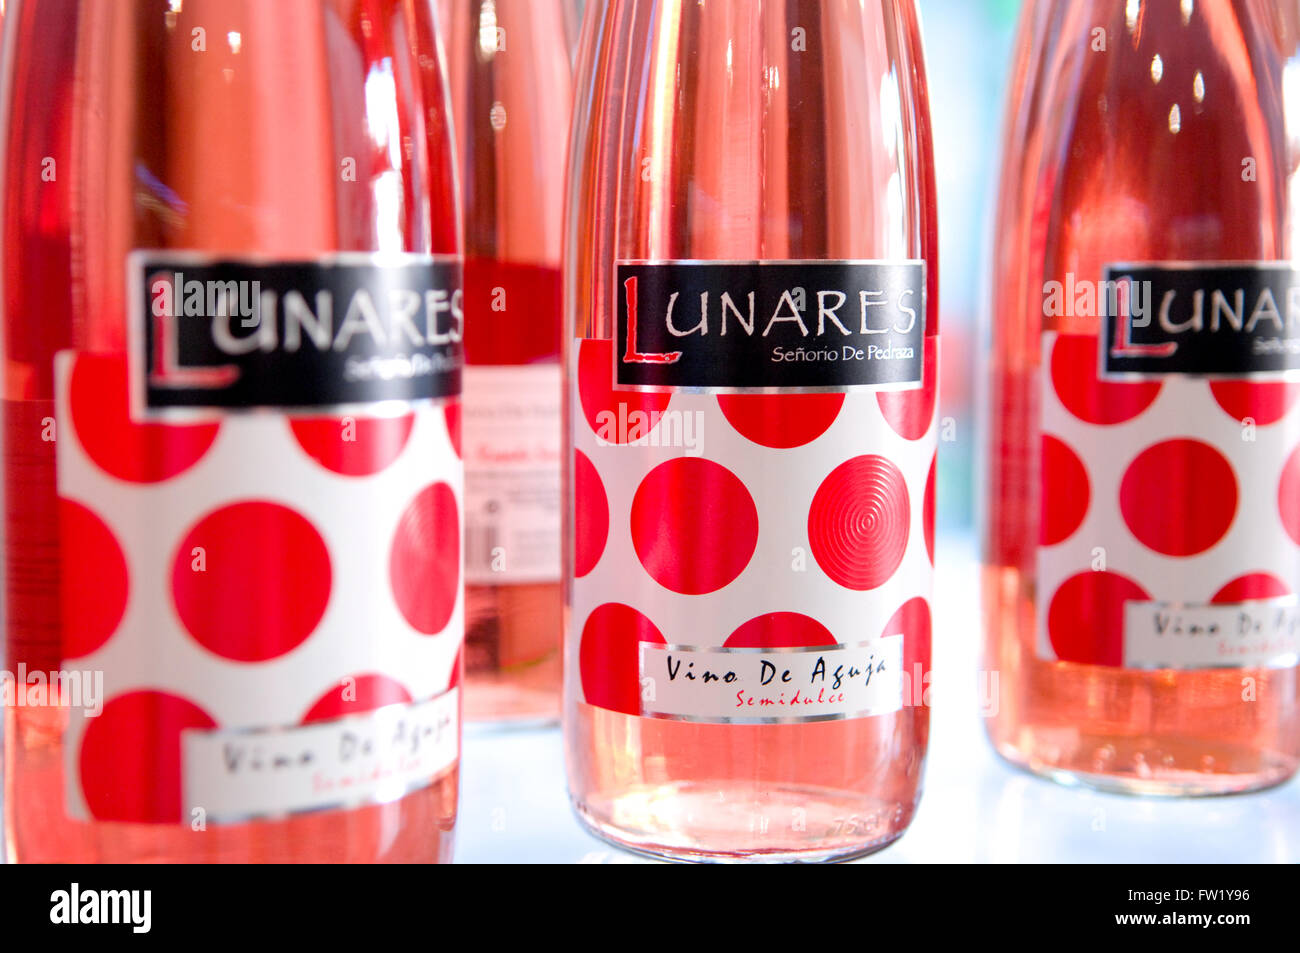 Lunar è un marchio di vino dalla Spagna Andalusia con un dolce sapore Lunar dall' azienda vinicola Foto Stock